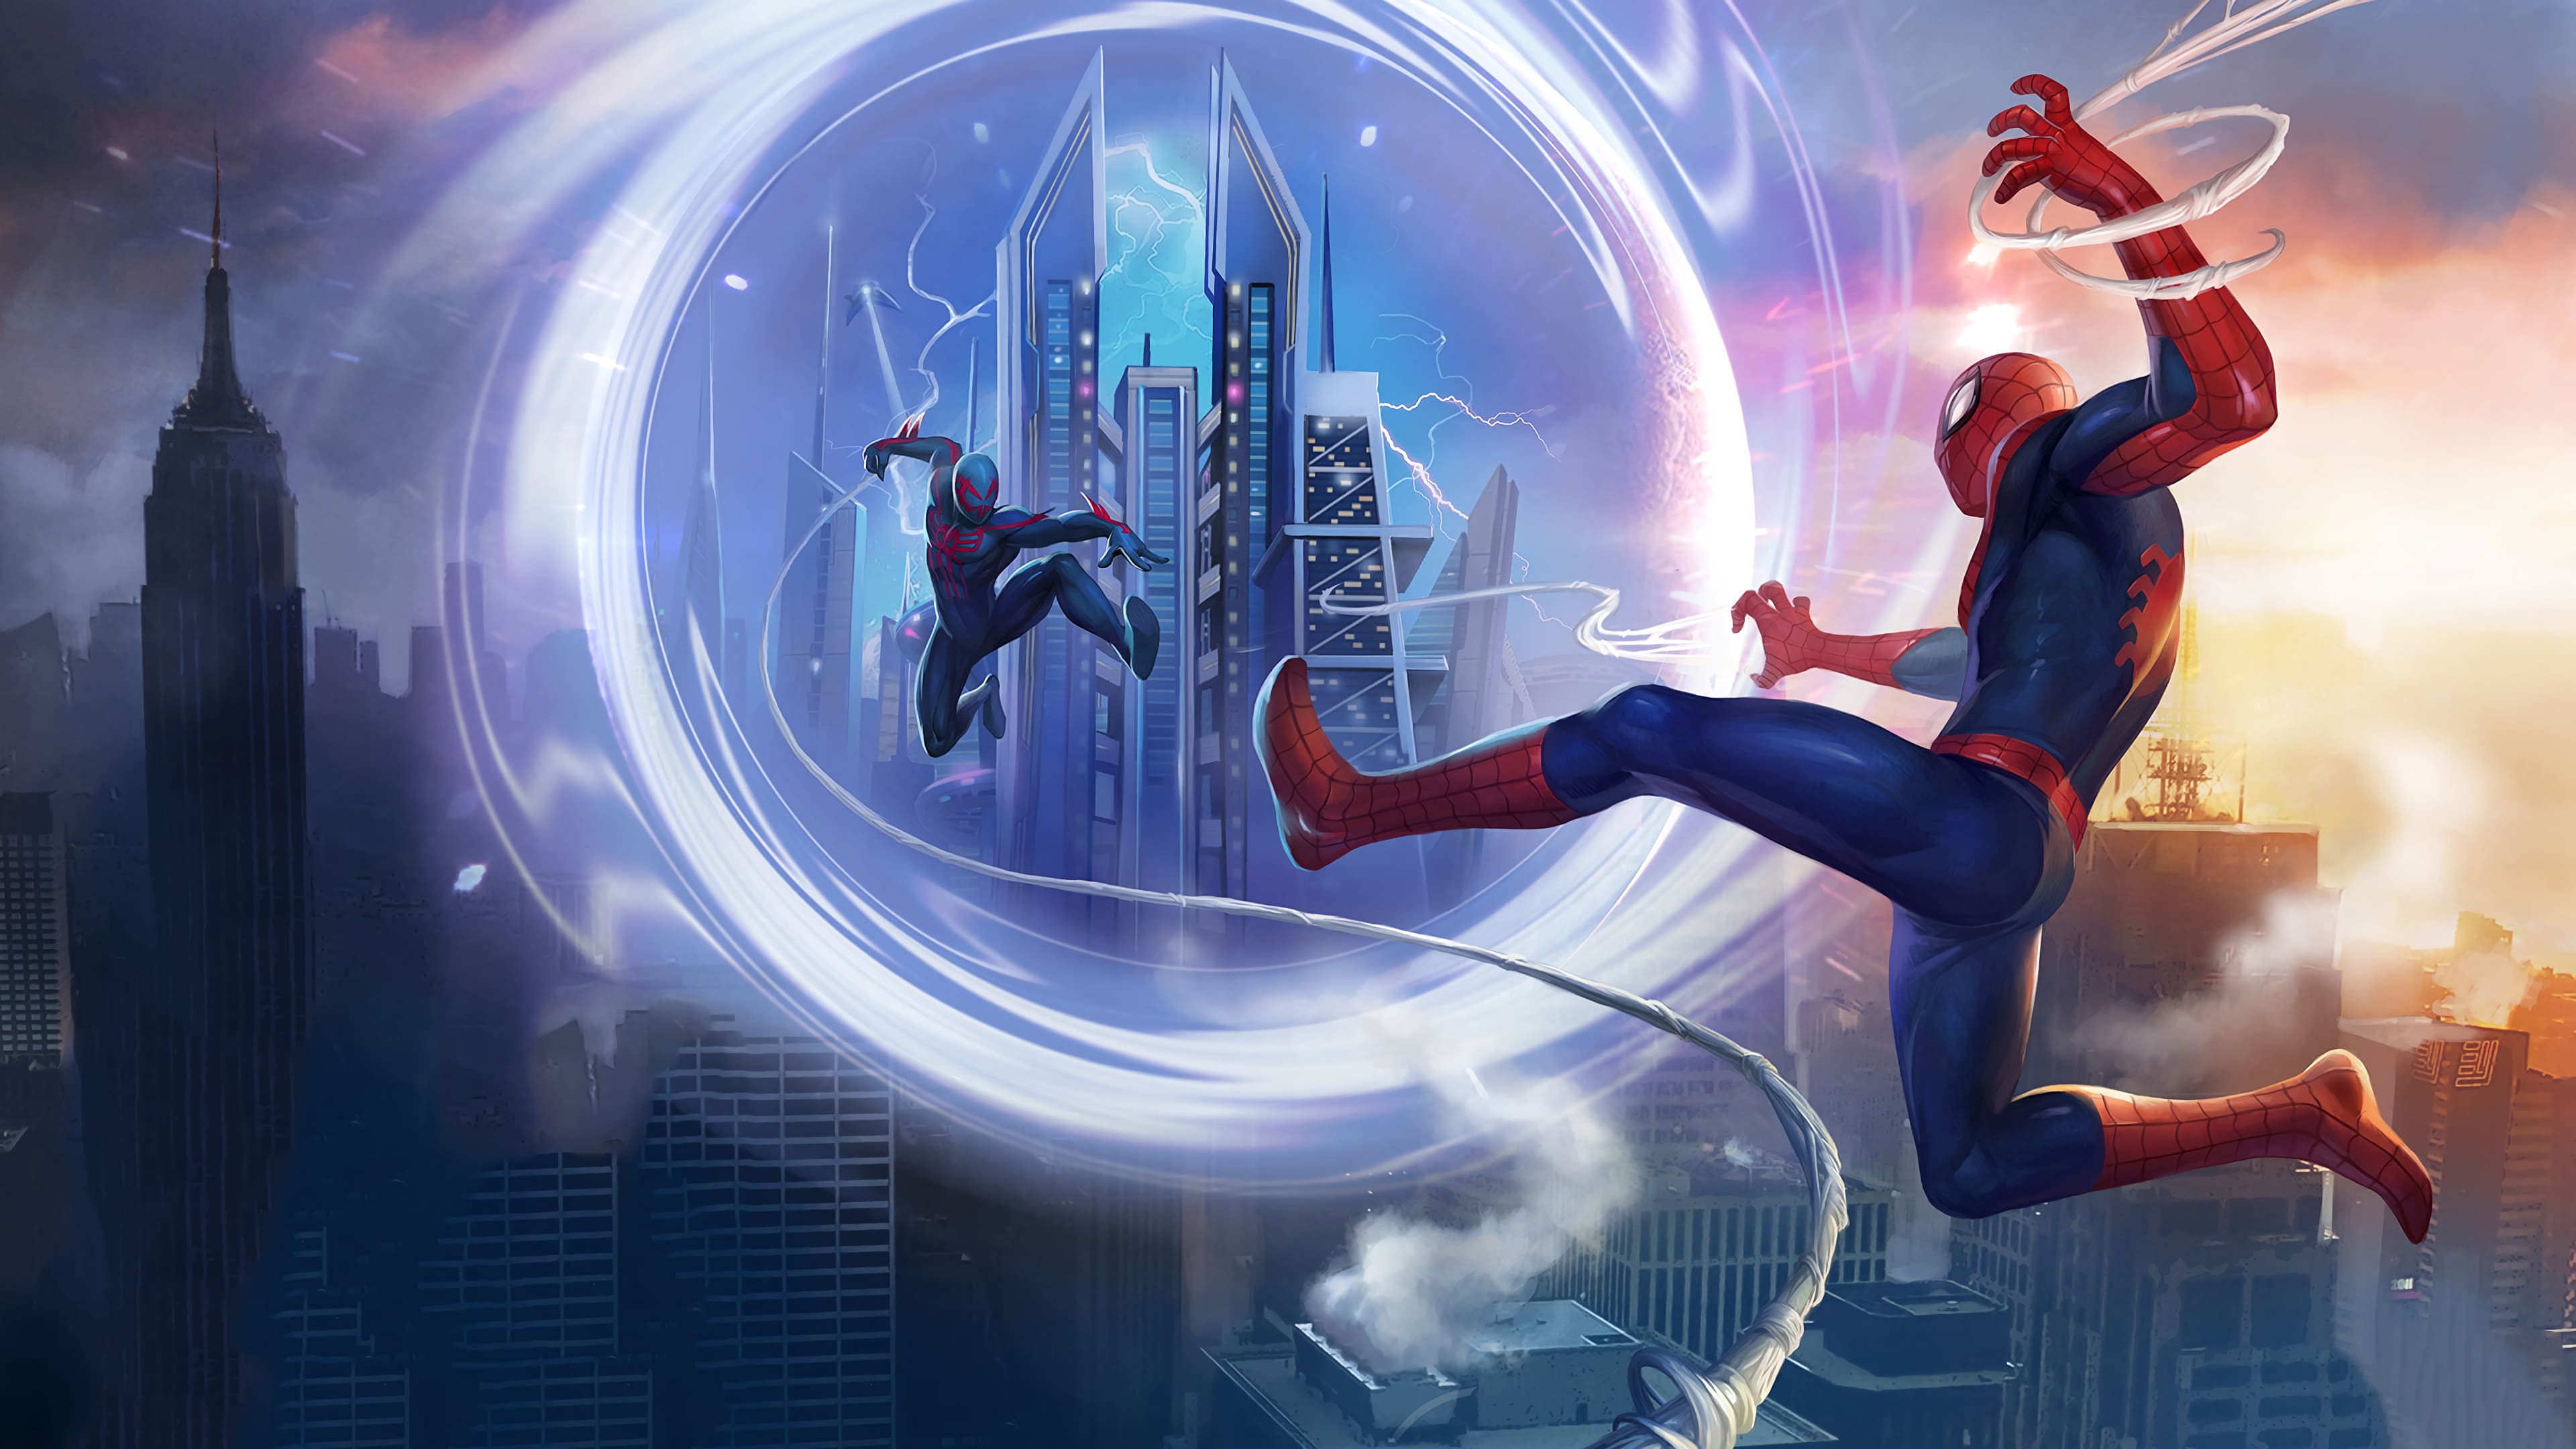 Với chất lượng hình ảnh tuyệt vời 4K, hình nền Spider Man 4k cho PC sẽ làm cho màn hình máy tính của bạn trở nên sống động và chân thực hơn bao giờ hết. Nếu bạn là fan của Người Nhện, đừng bỏ lỡ cơ hội này để có được một hình nền đẹp và nhìn sắc nét cho màn hình máy tính của mình.